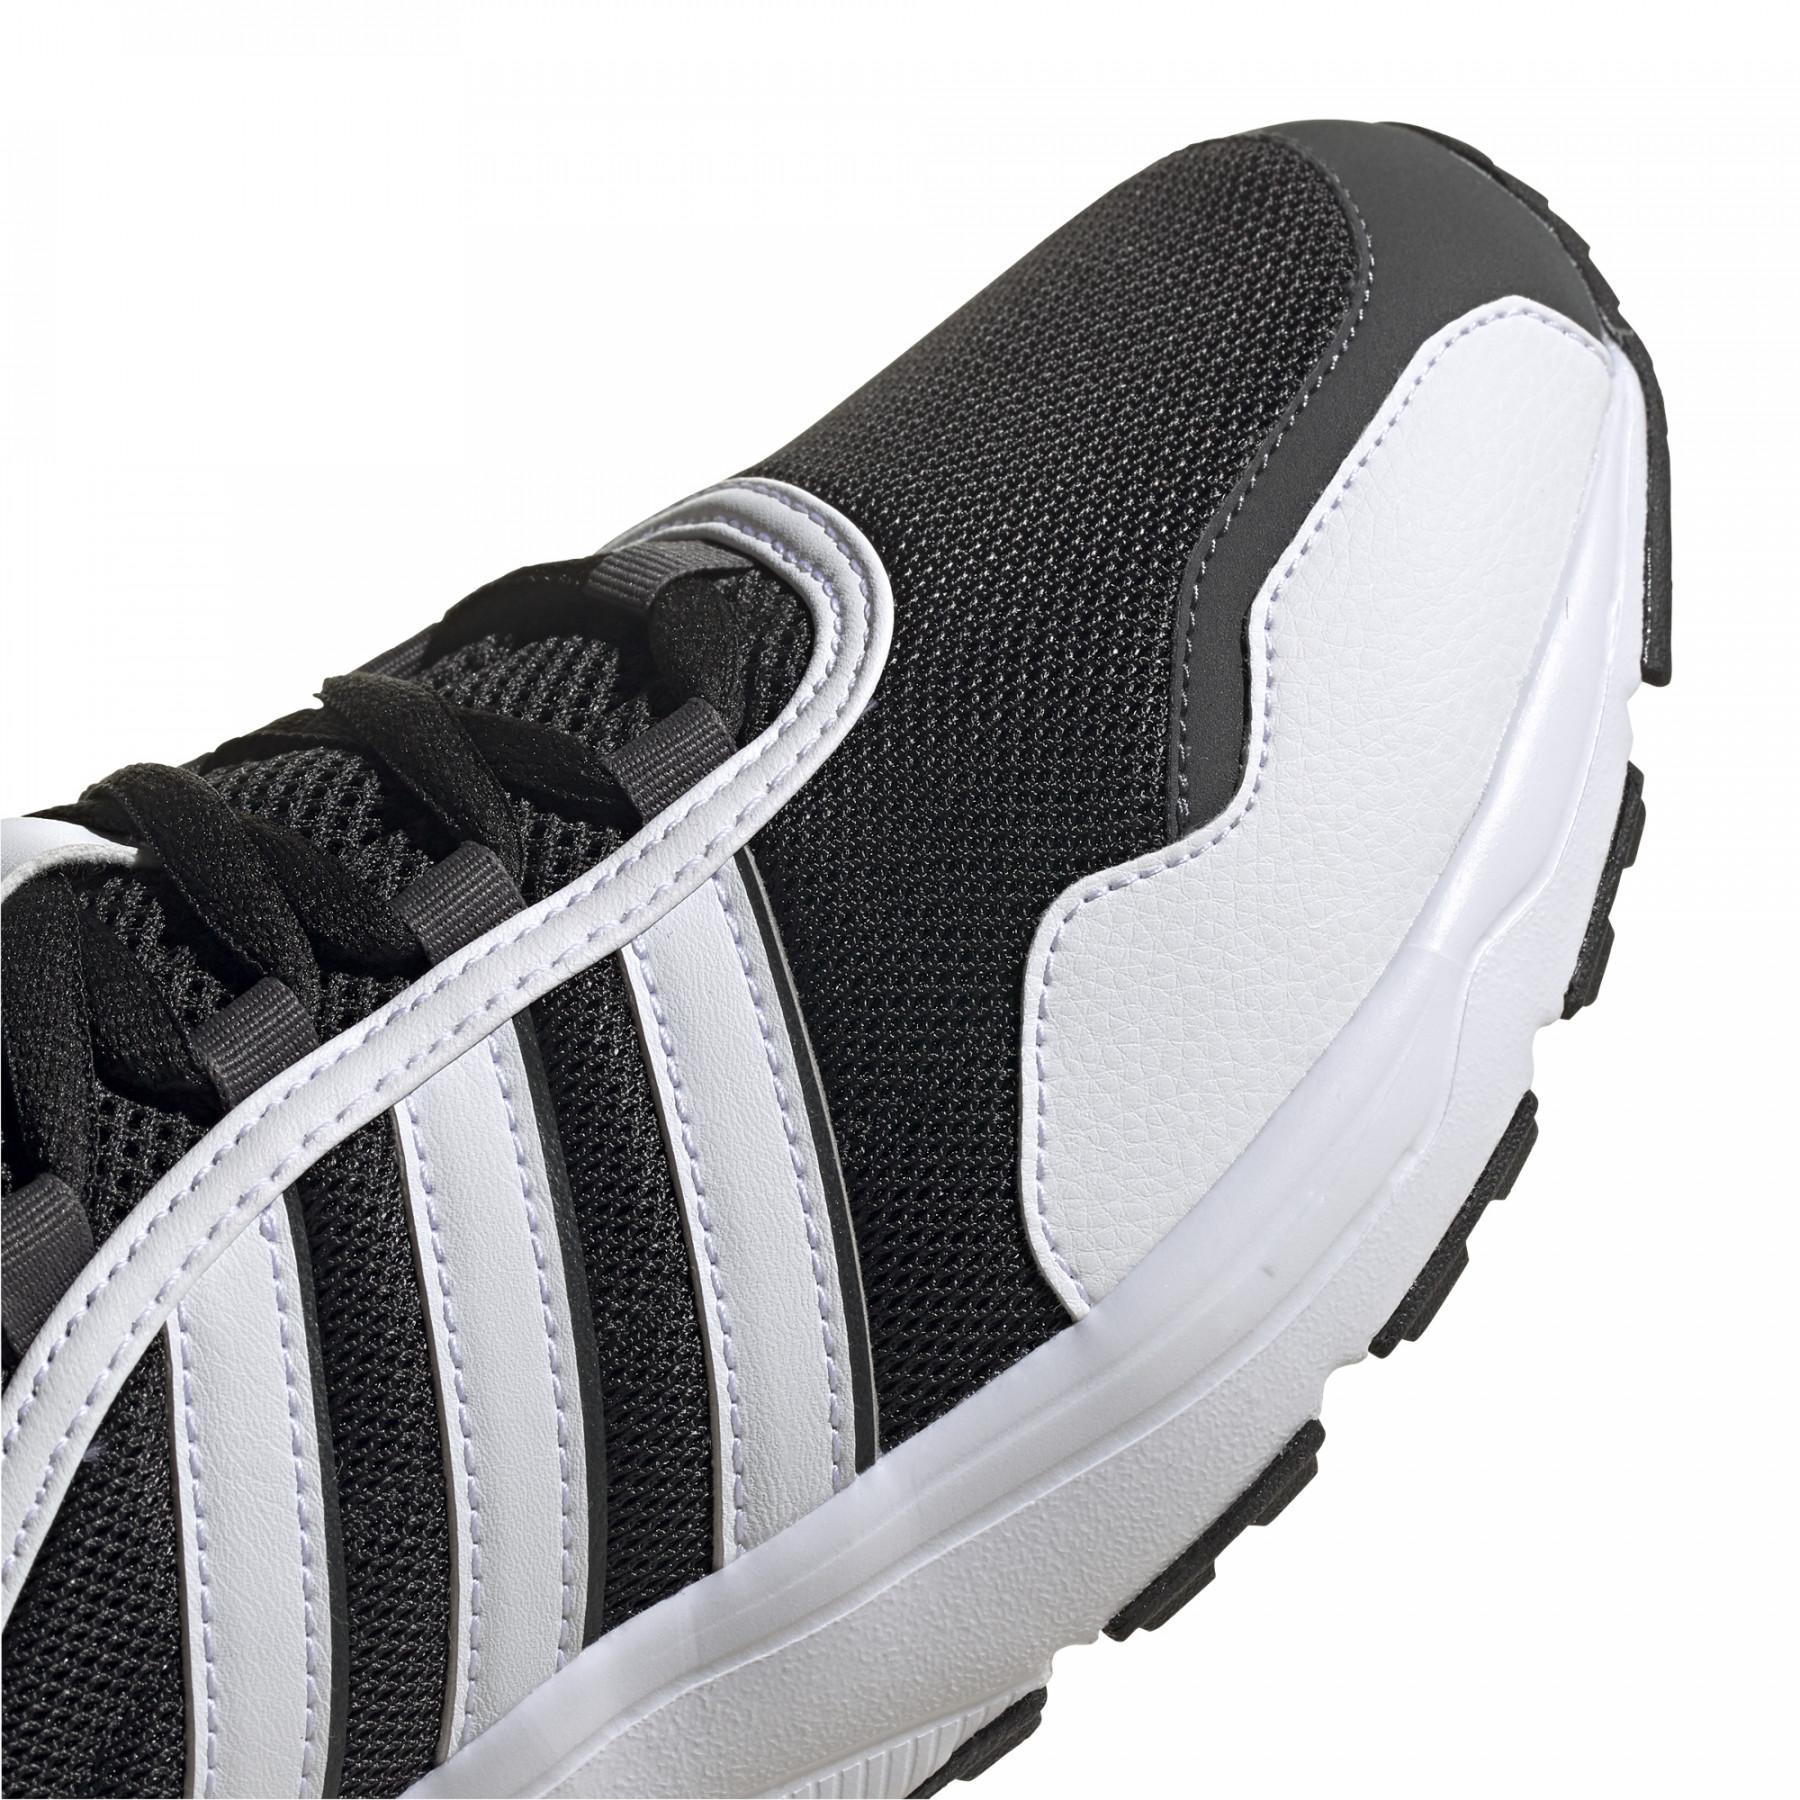 Schuhe adidas 90s Runner